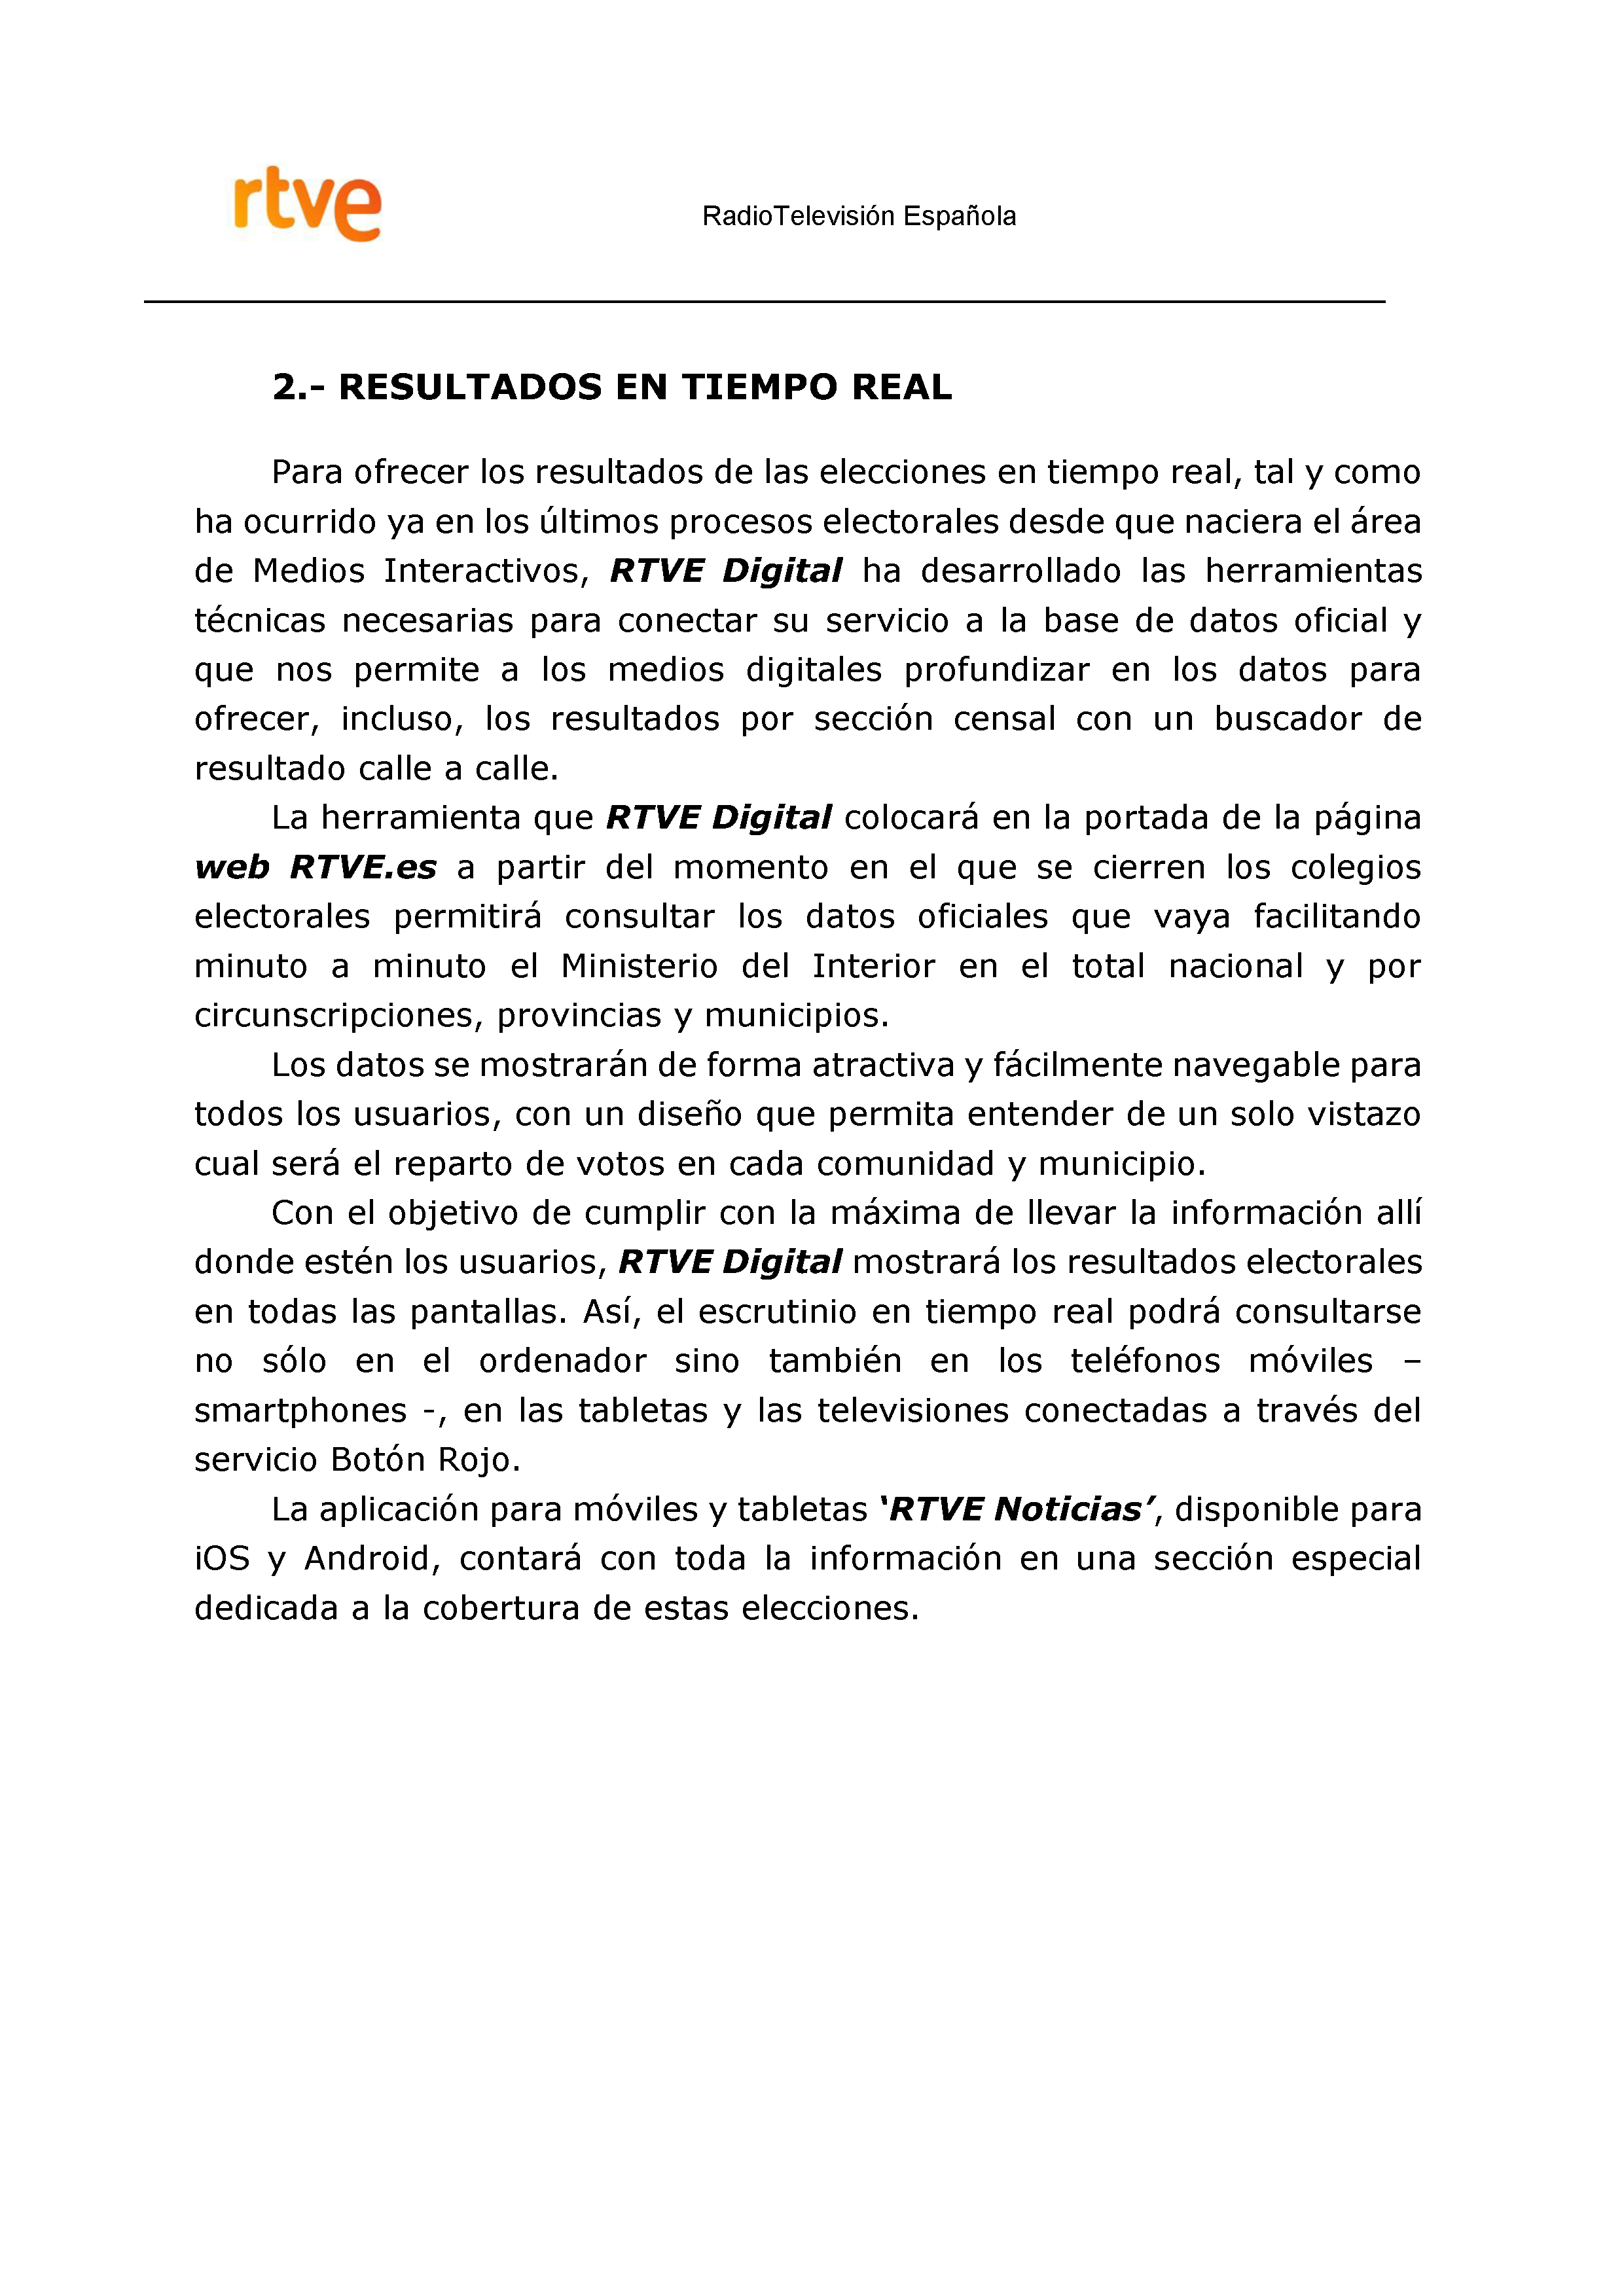 PLAN DE COBERTURA INFORMATIVA RTVE en Extremadura ELECCIONES MUNICIPALES Y AUTONÃ“MICAS Pag 14